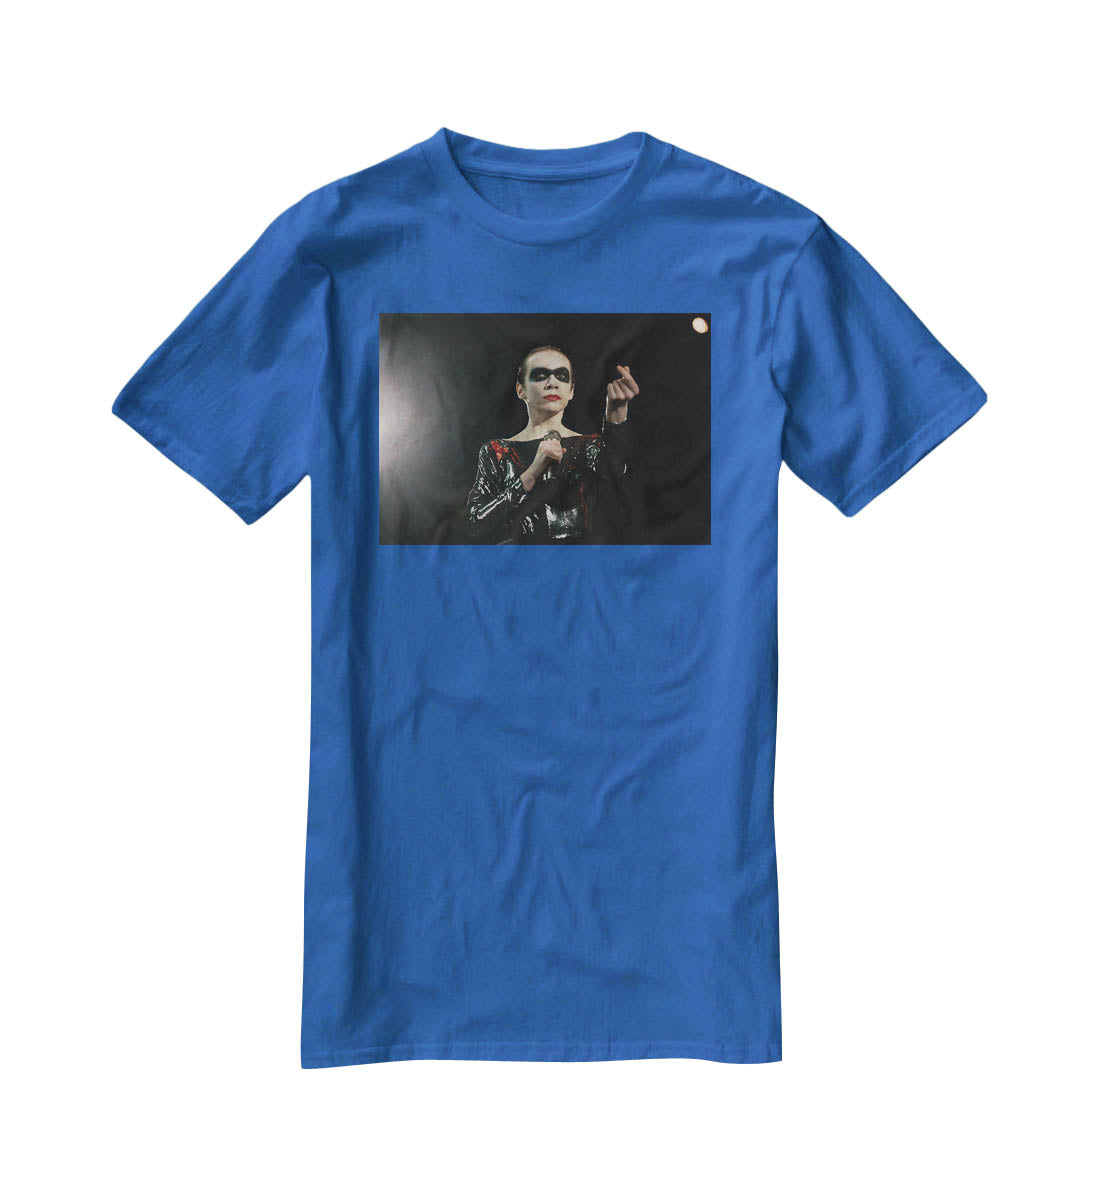 Annie Lennox in concert T-Shirt - Canvas Art Rocks - 2